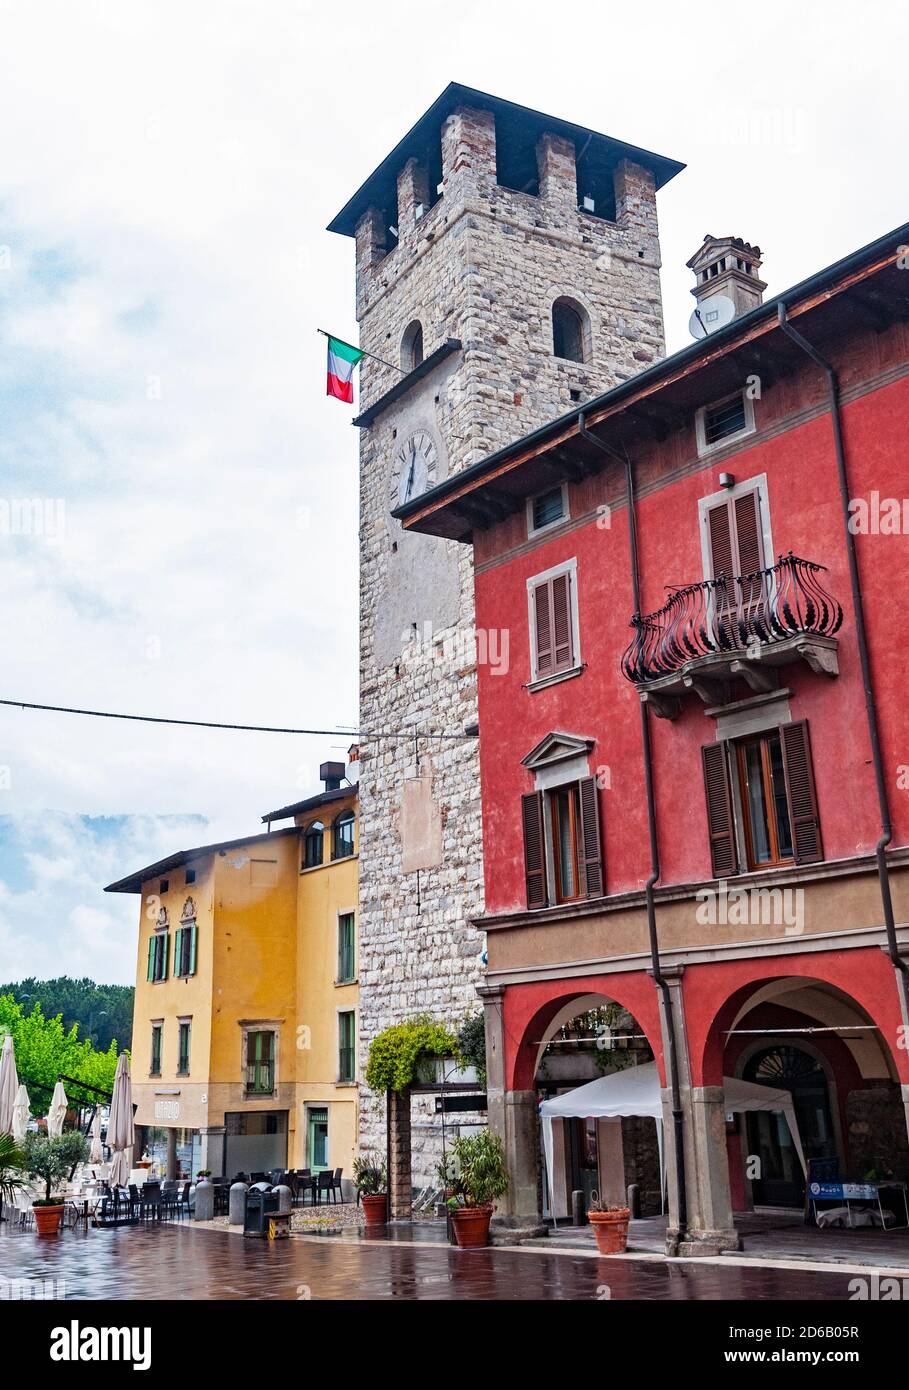 Tour de l'horloge à Pisogne, Lombardie, Italie Banque D'Images